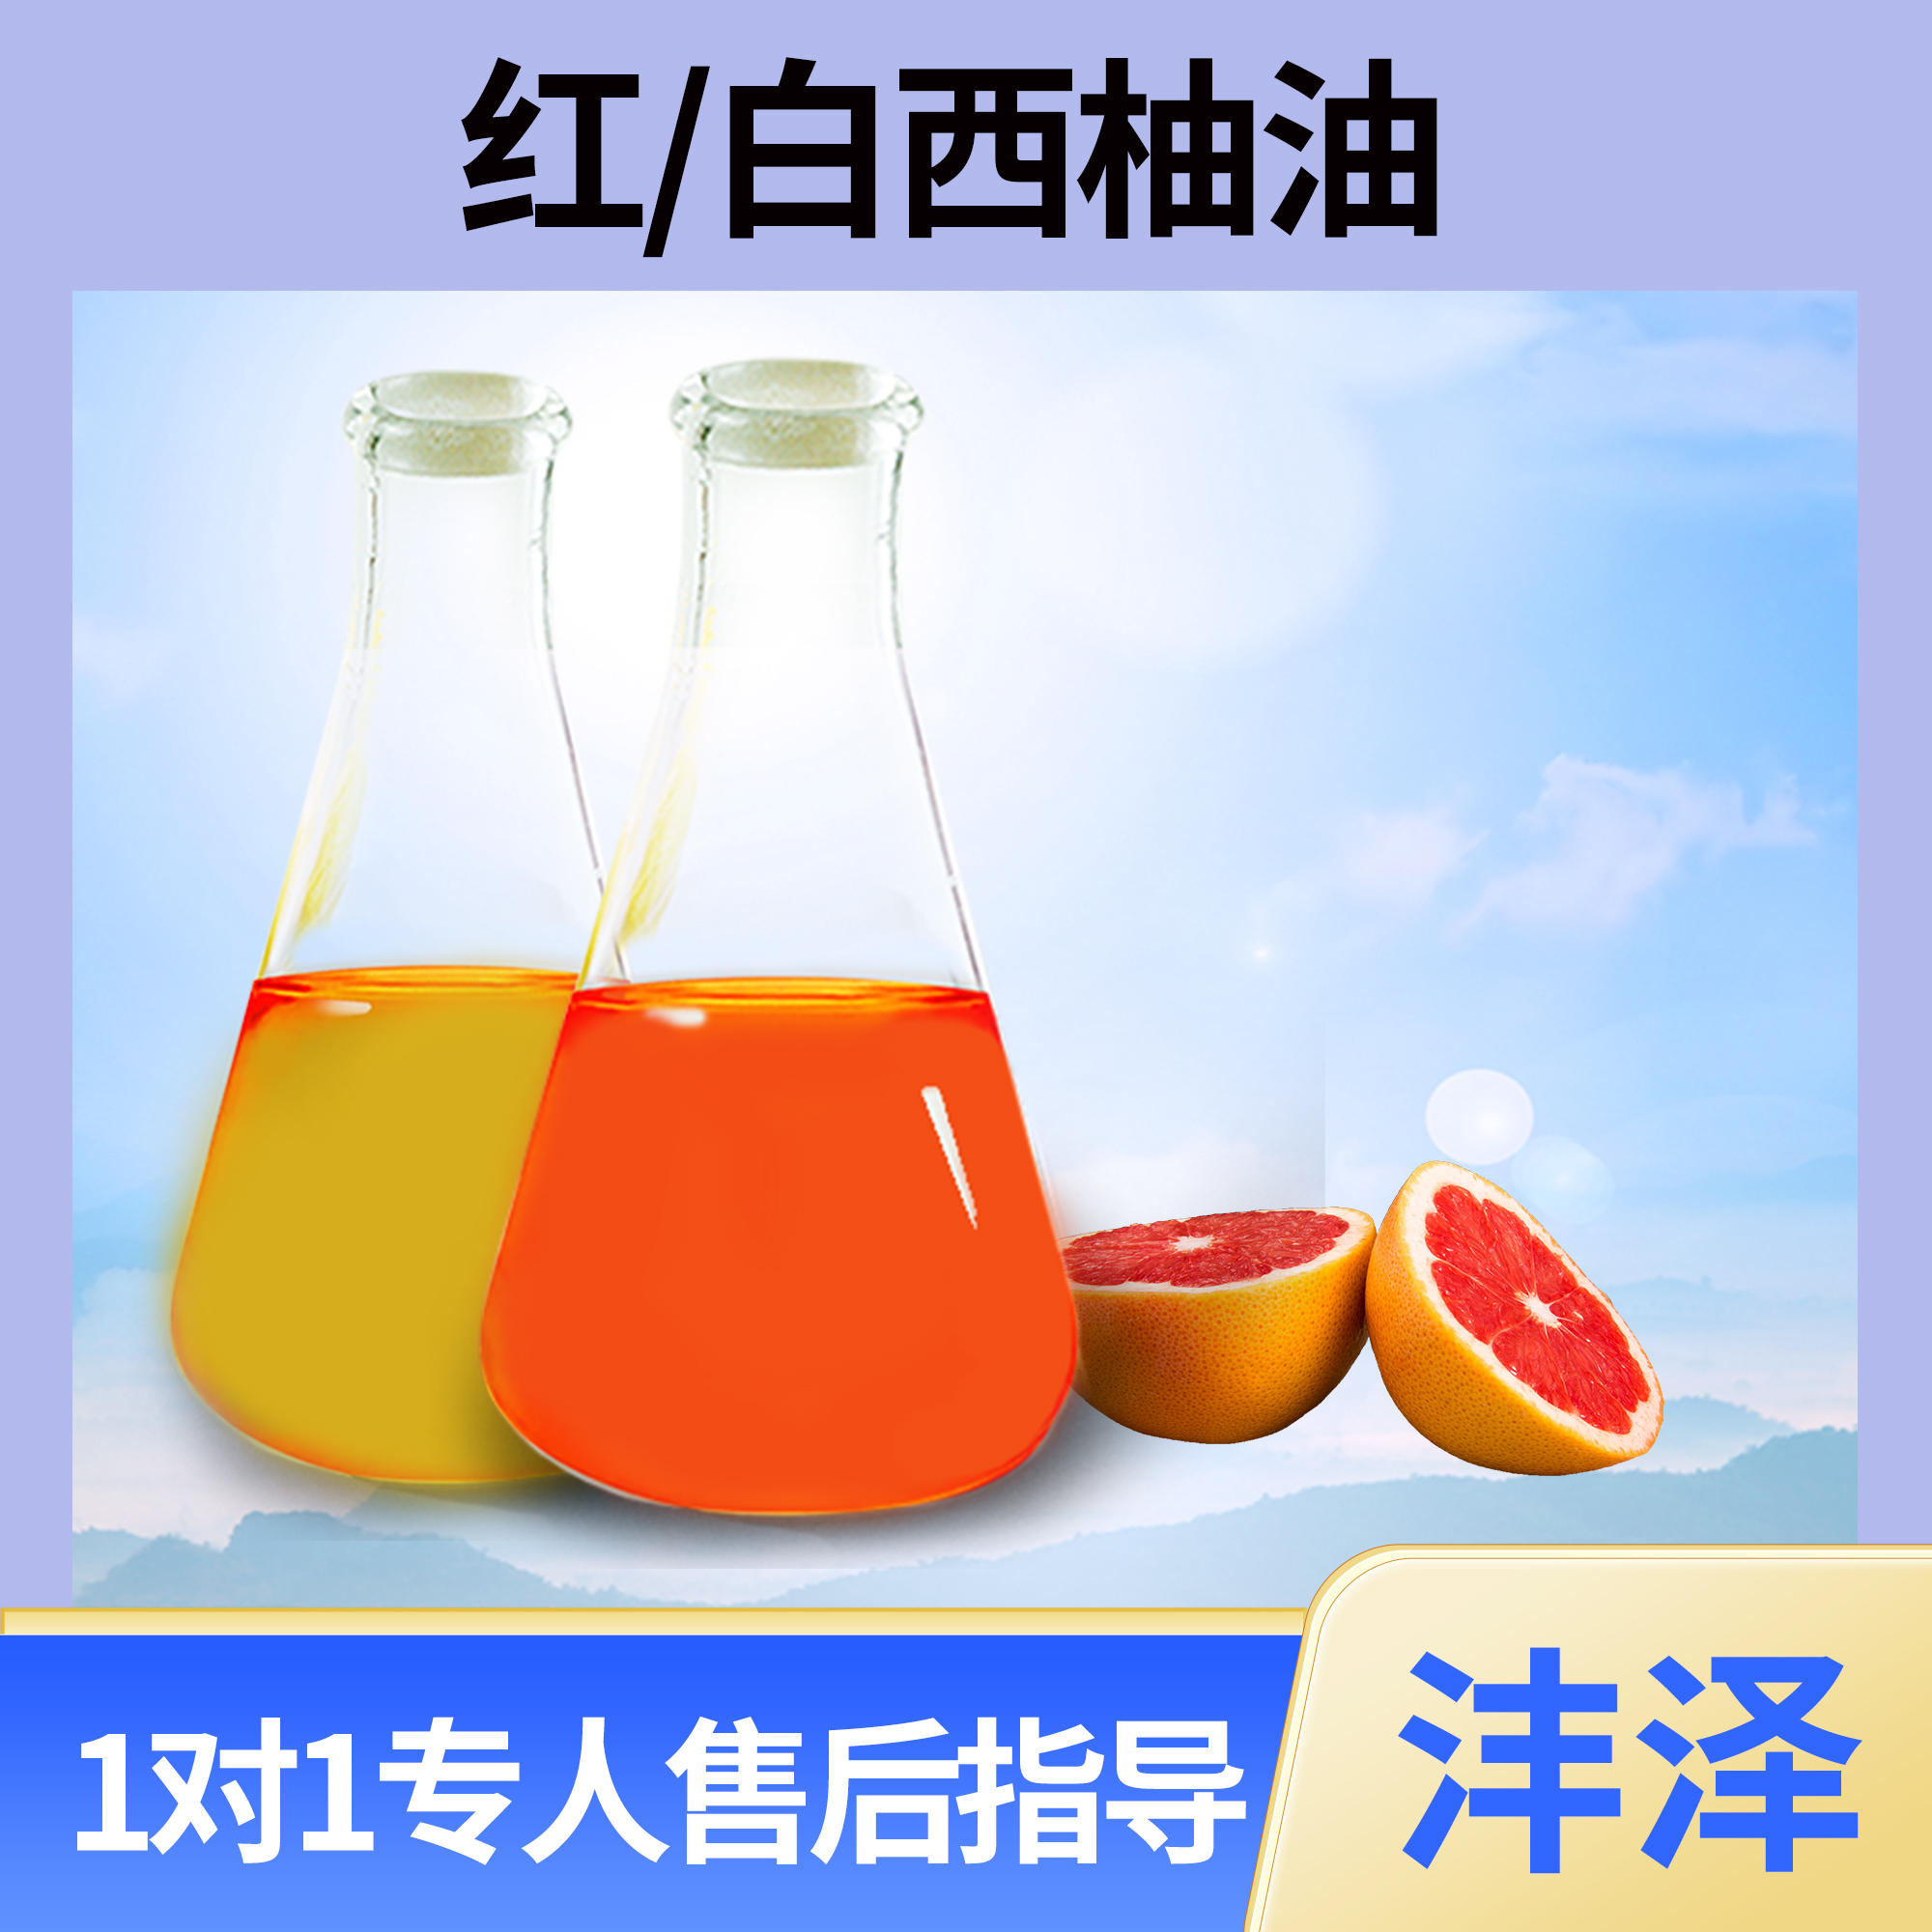 葡萄柚油的cas 西柚油提取 8016-20-4 如期发货不超时【沣泽】